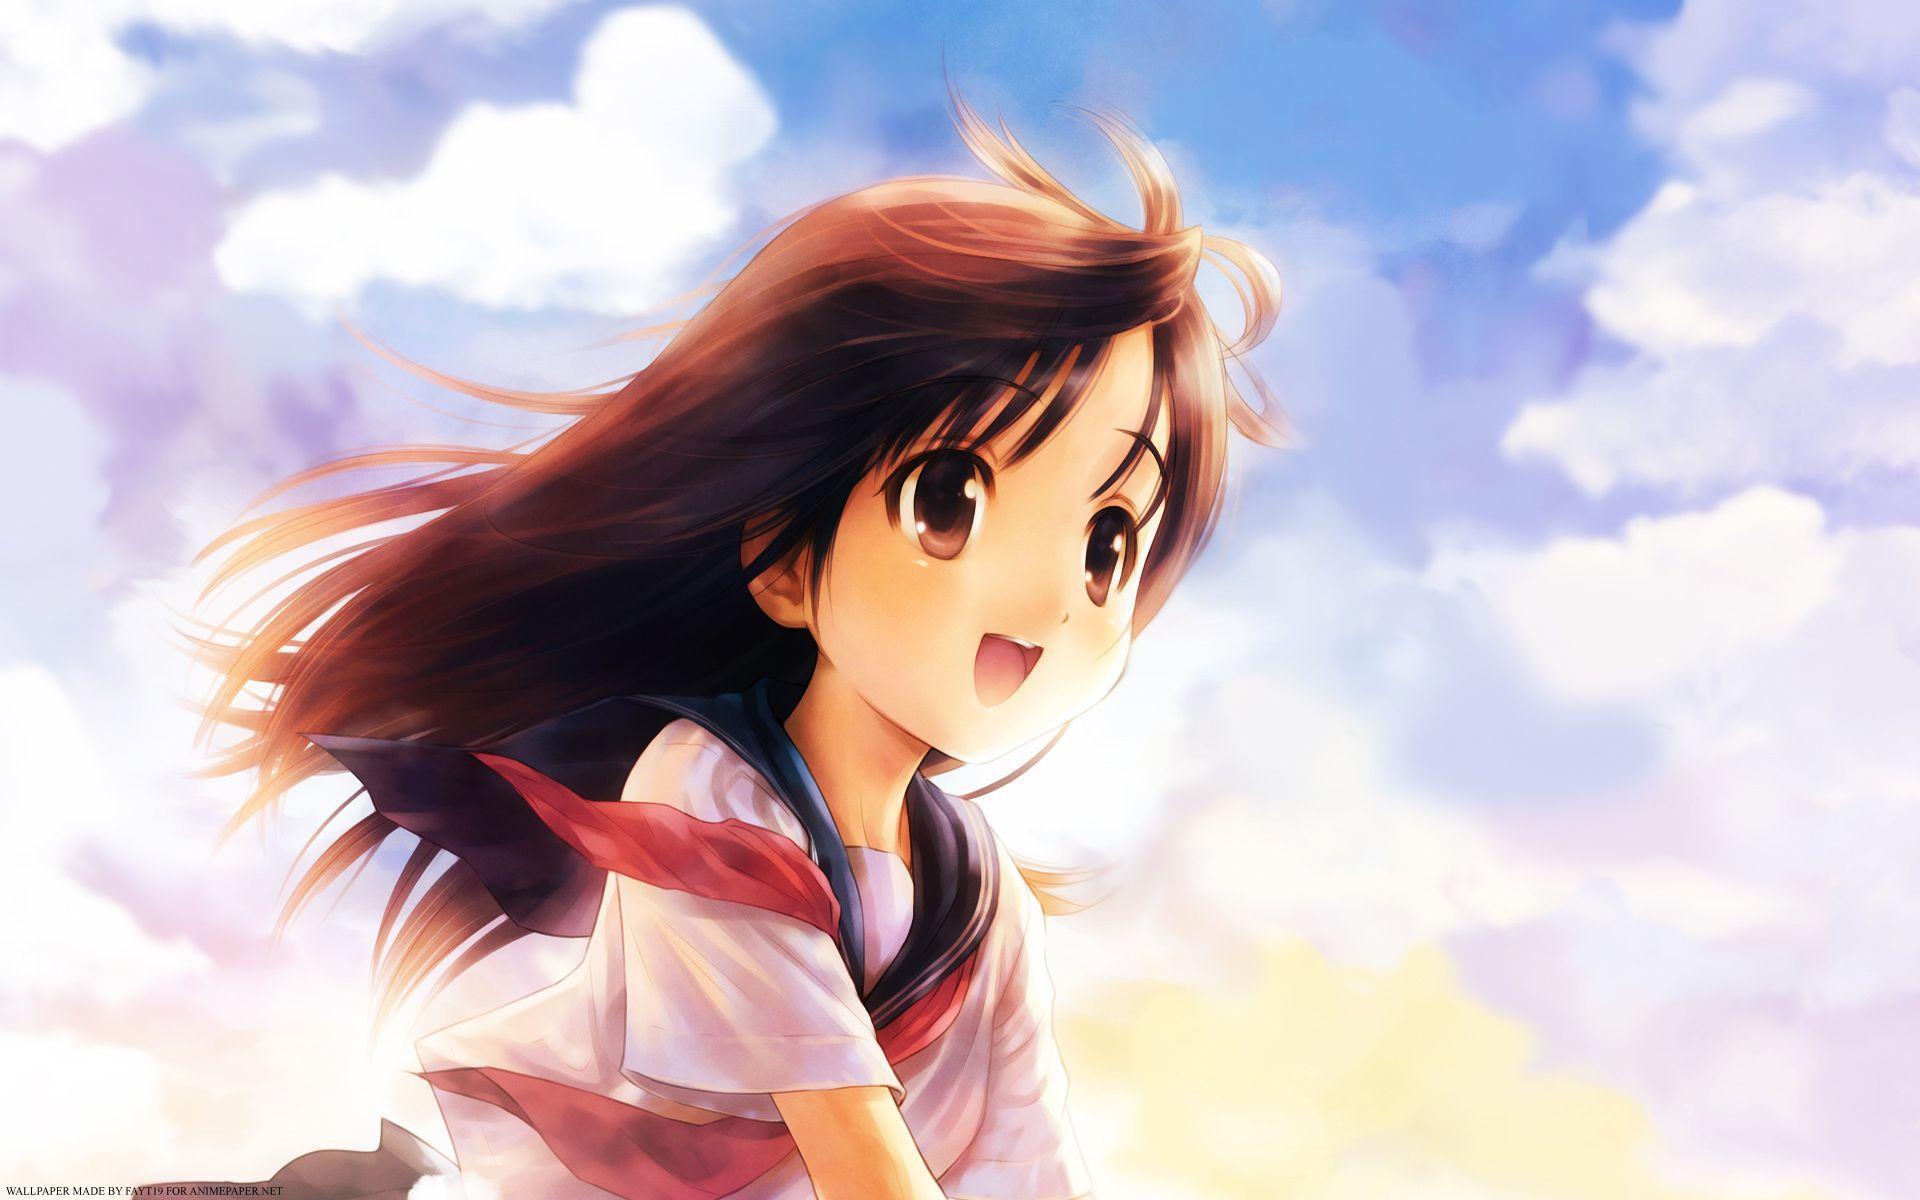 Anime Girl Wallpaper HD. Wallpaper, Background, Image, Art